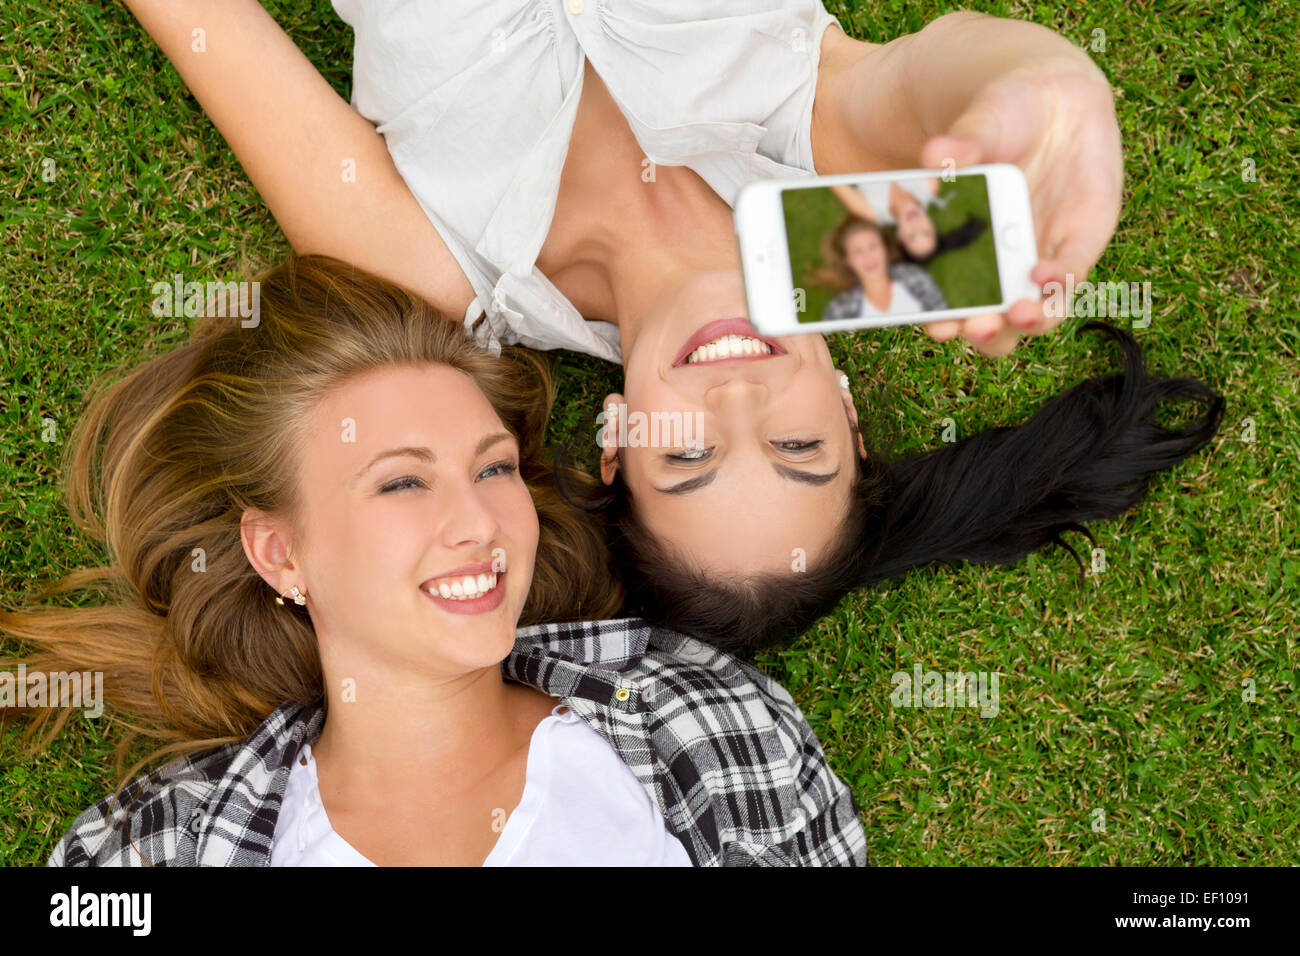 Девушки делают друг. Подружки лежат на траве. Встреча друзей на природе картинки. Селфи на траве. Идеи для фото лежа с подругой.